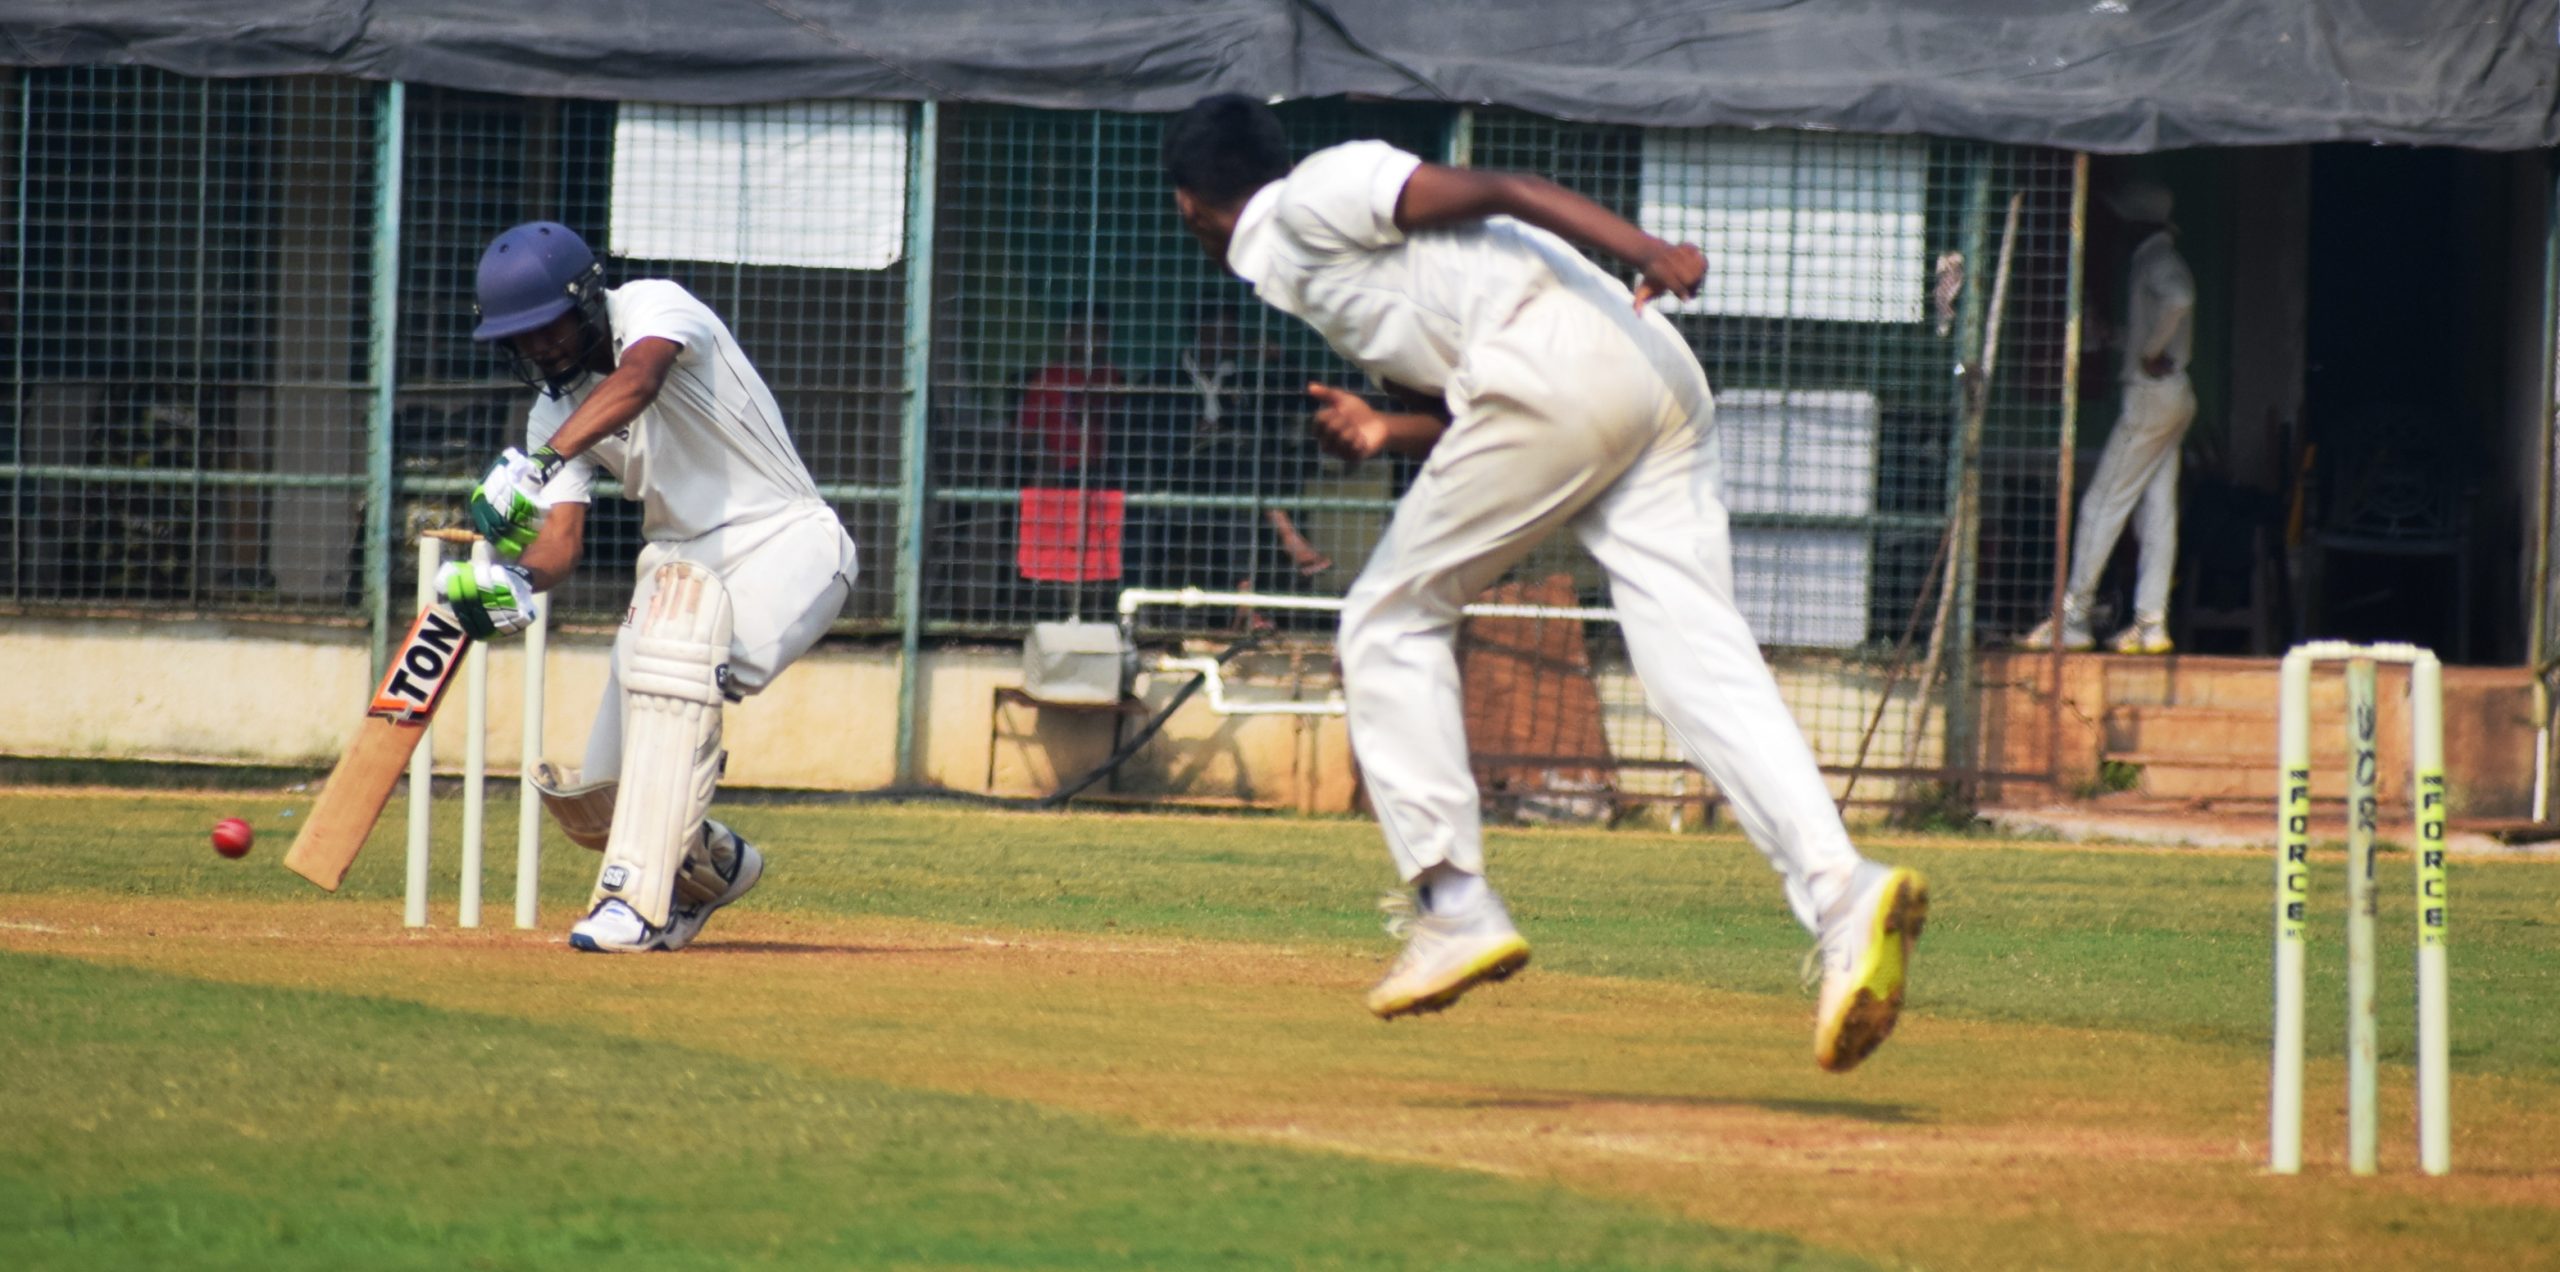 दुसऱ्या पीवायसी गोल्डफिल्ड राजू भालेकर करंडक निमंत्रित 19 वर्षाखालील क्रिकेट स्पर्धेत संयुक्त जिल्हा संघाचा क्लब ऑफ महाराष्ट्र संघावर विजय